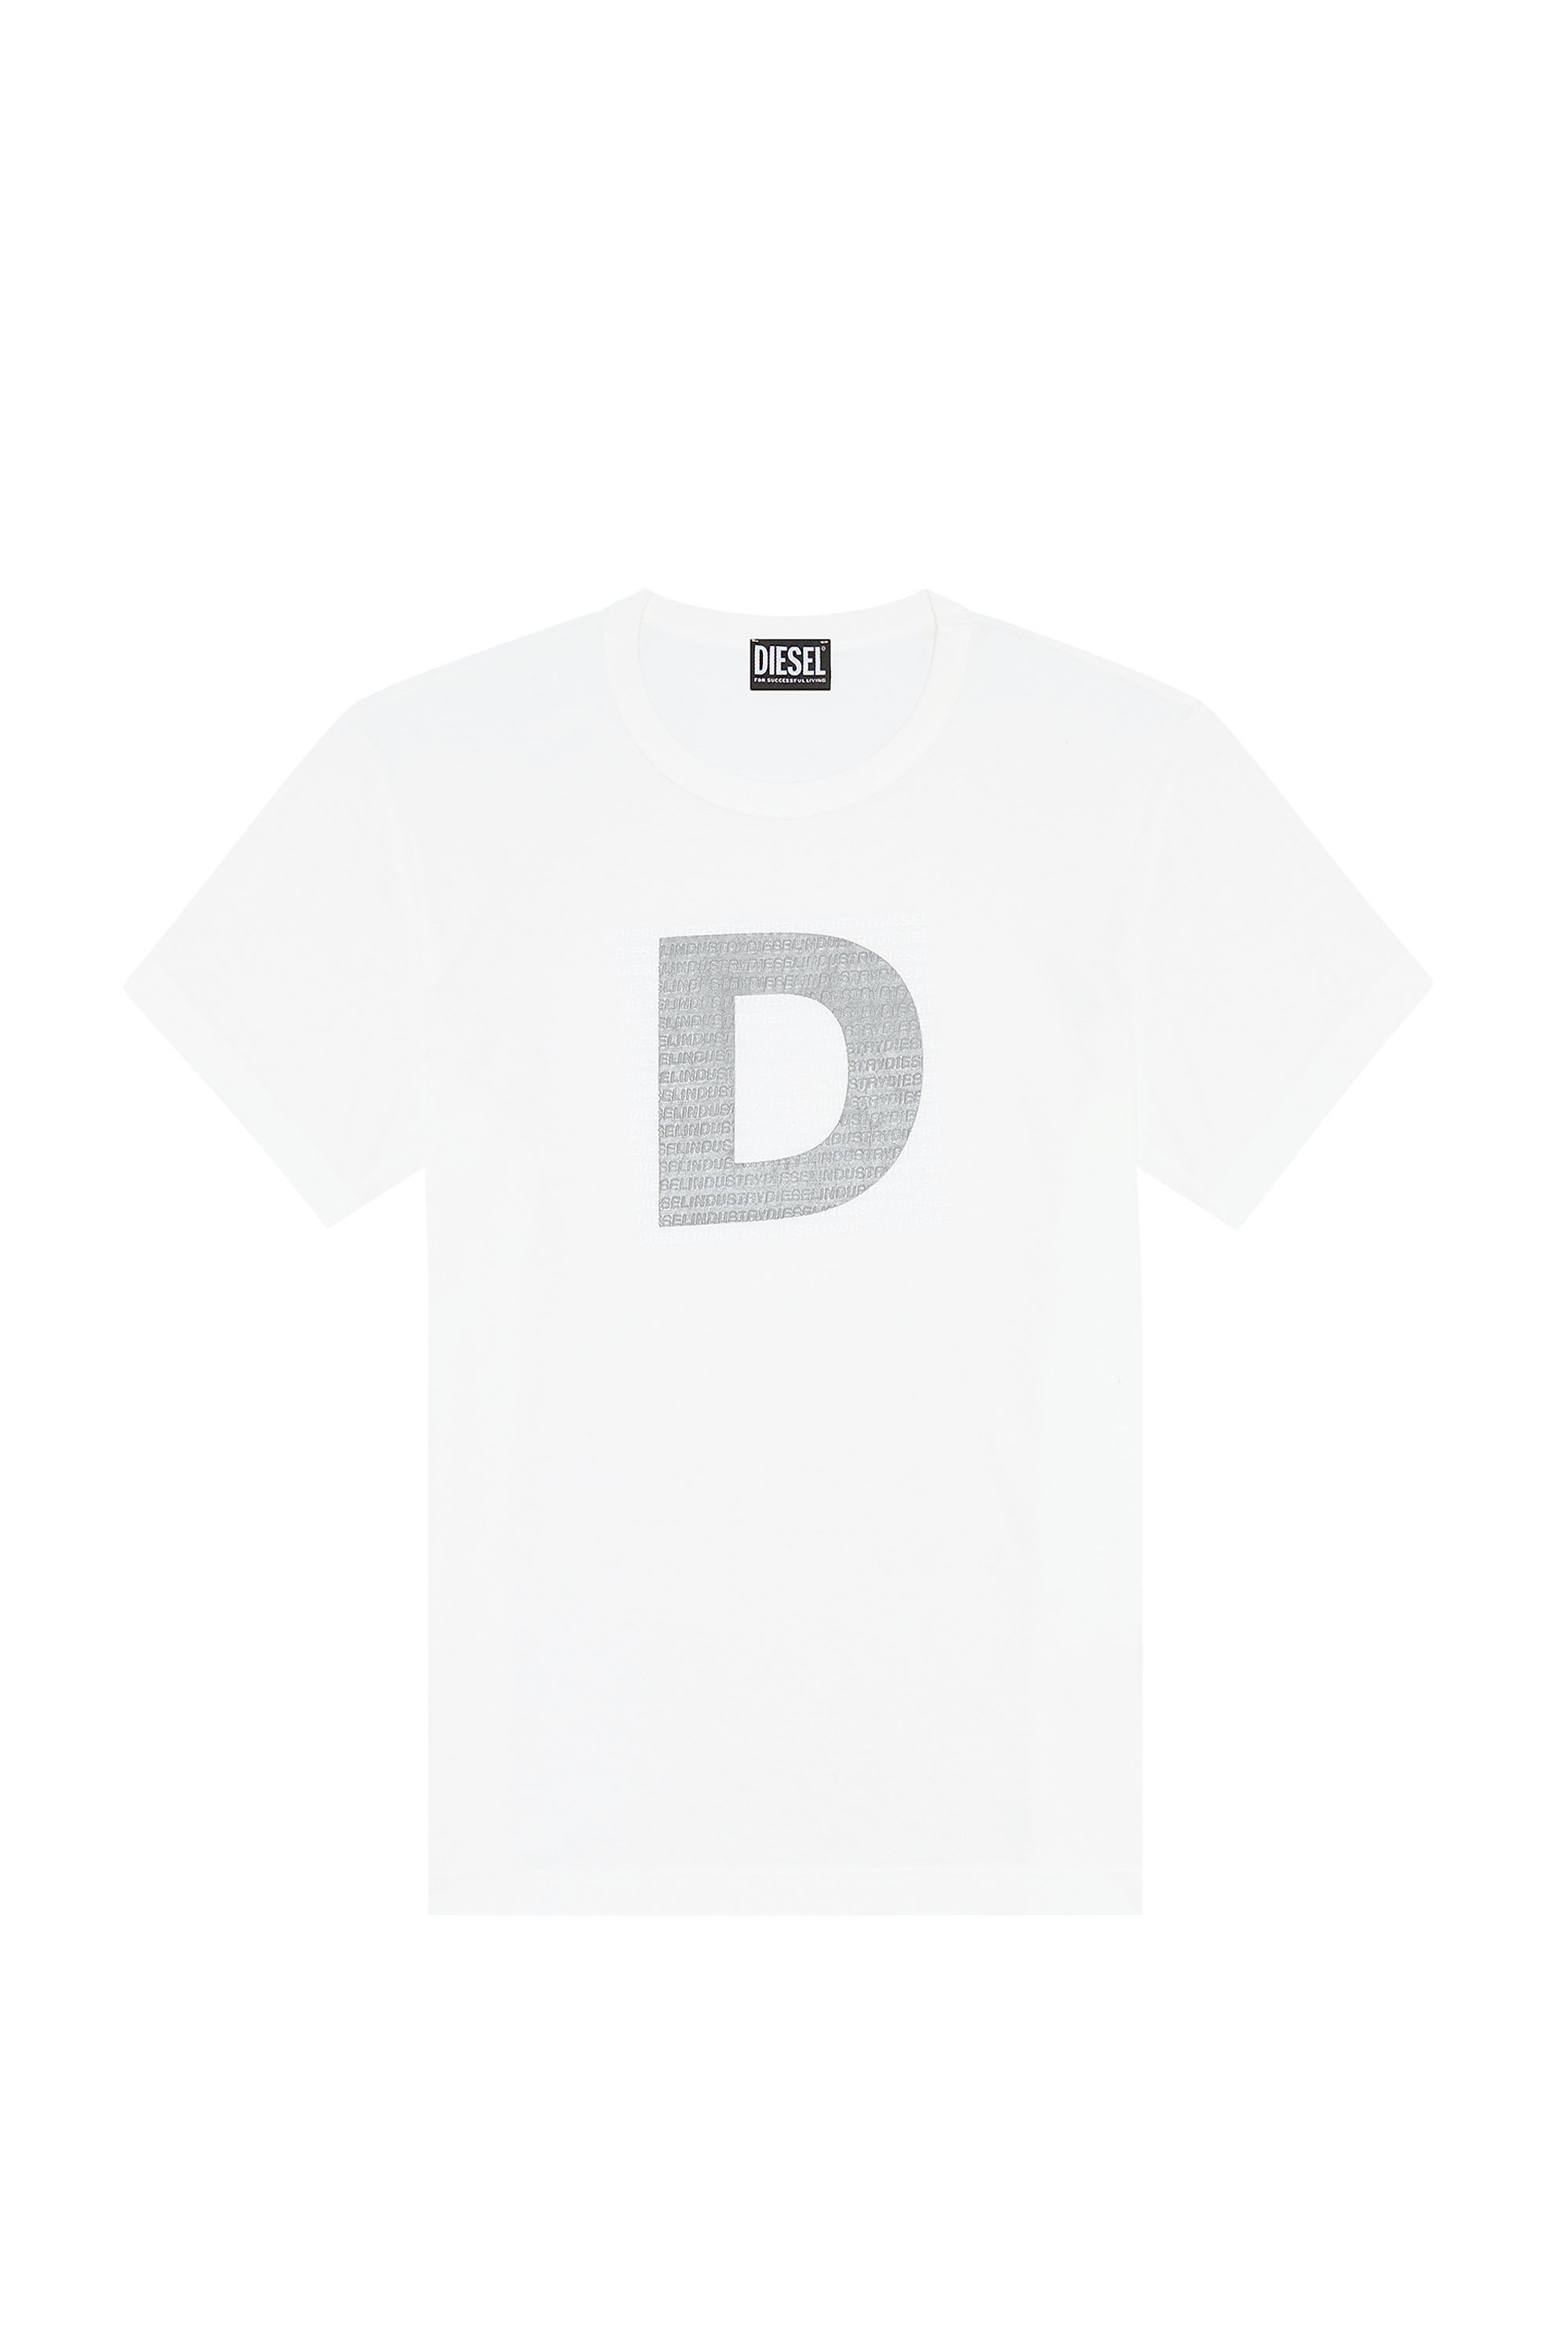 Diesel - T-DIEGOR-COL, White - Image 6